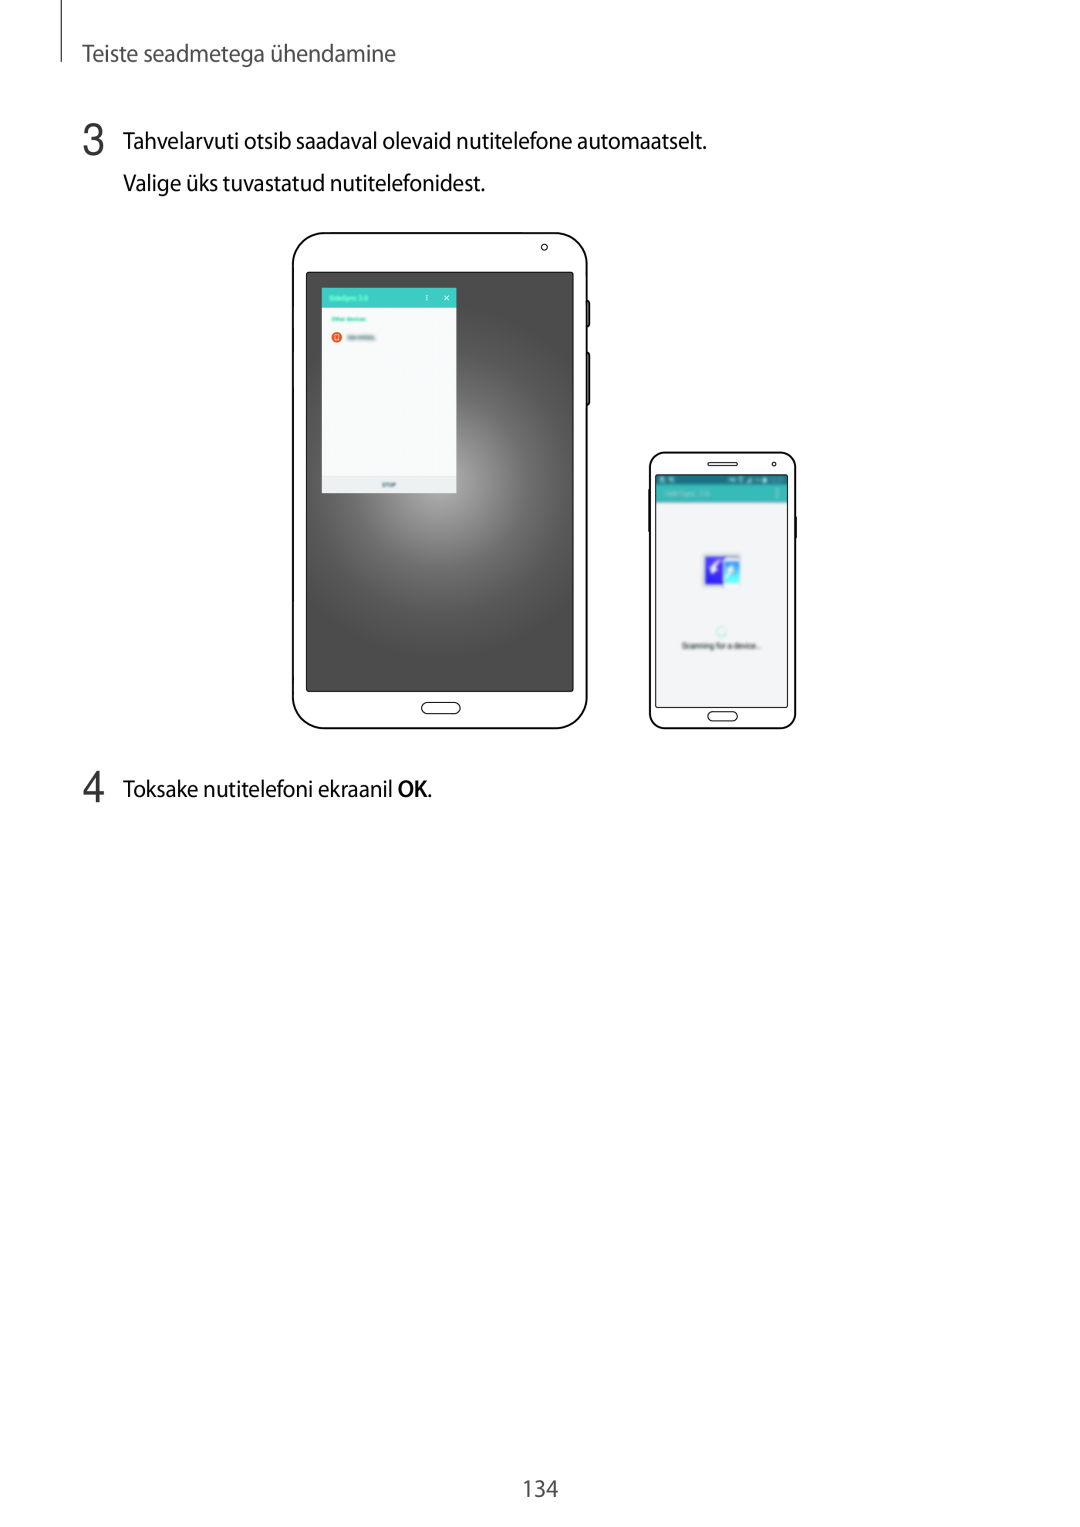 Samsung SM-T700NZWASEB, SM-T700NTSASEB manual Teiste seadmetega ühendamine, Toksake nutitelefoni ekraanil OK 